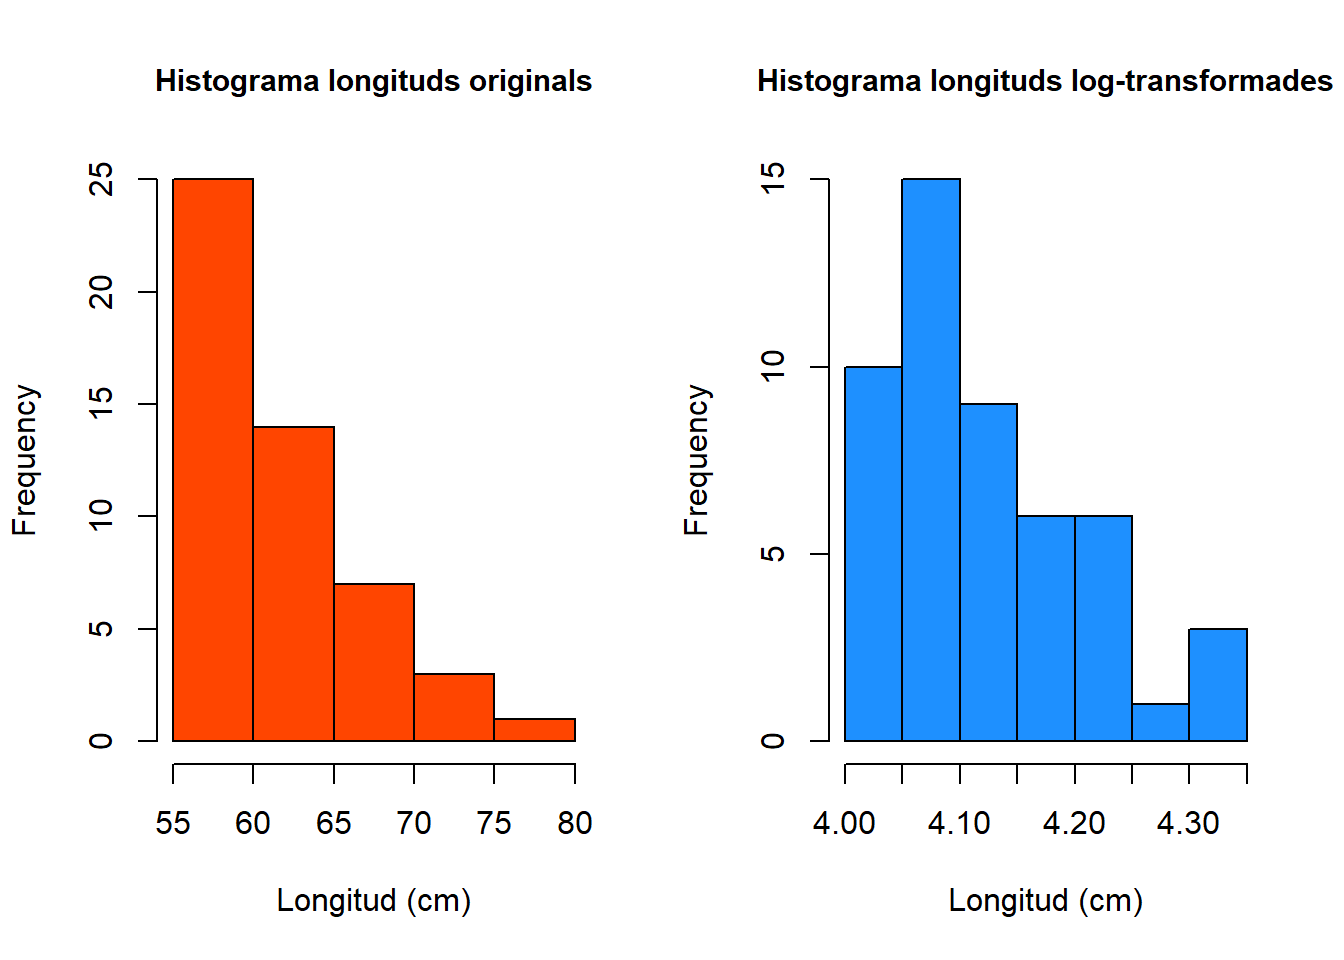 Histograma de les longituds de les bajoques de pèsol original (esquerre). Histograma de les longituds de les bajoques de pèsol log-transformades (dreta).